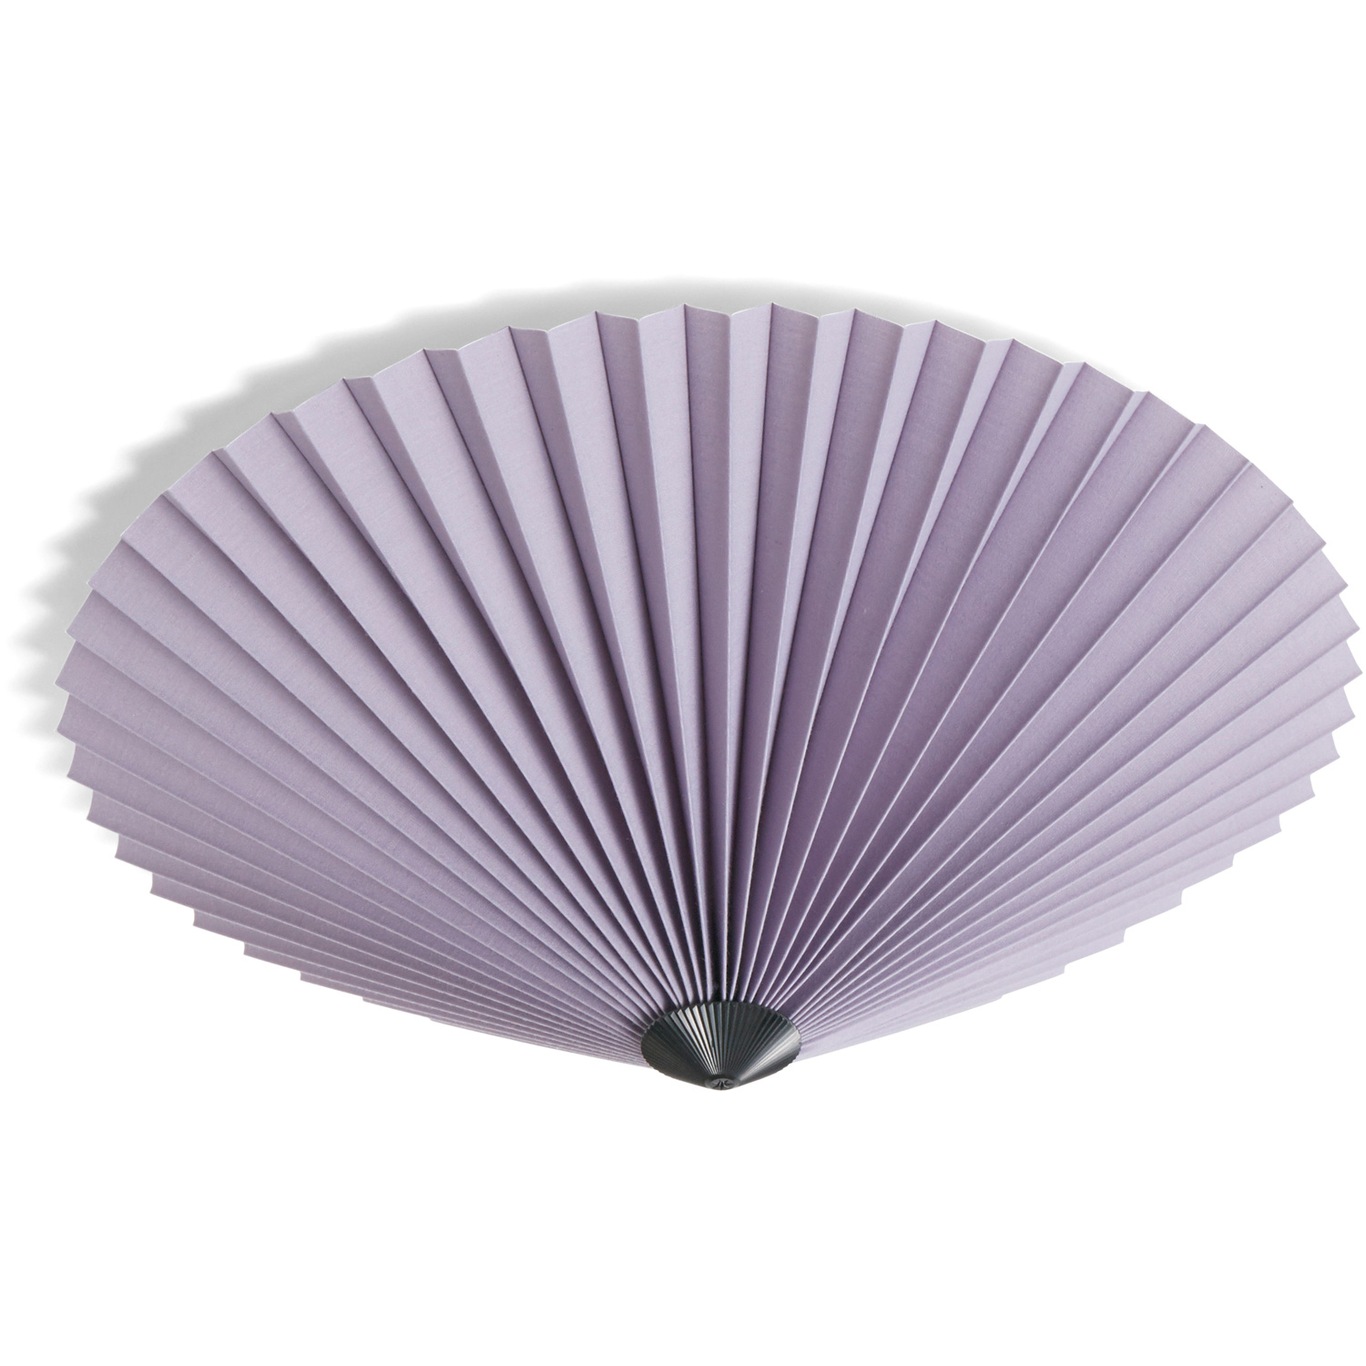 Matin Lampe 500 mm Loft / Væg, Lavendel